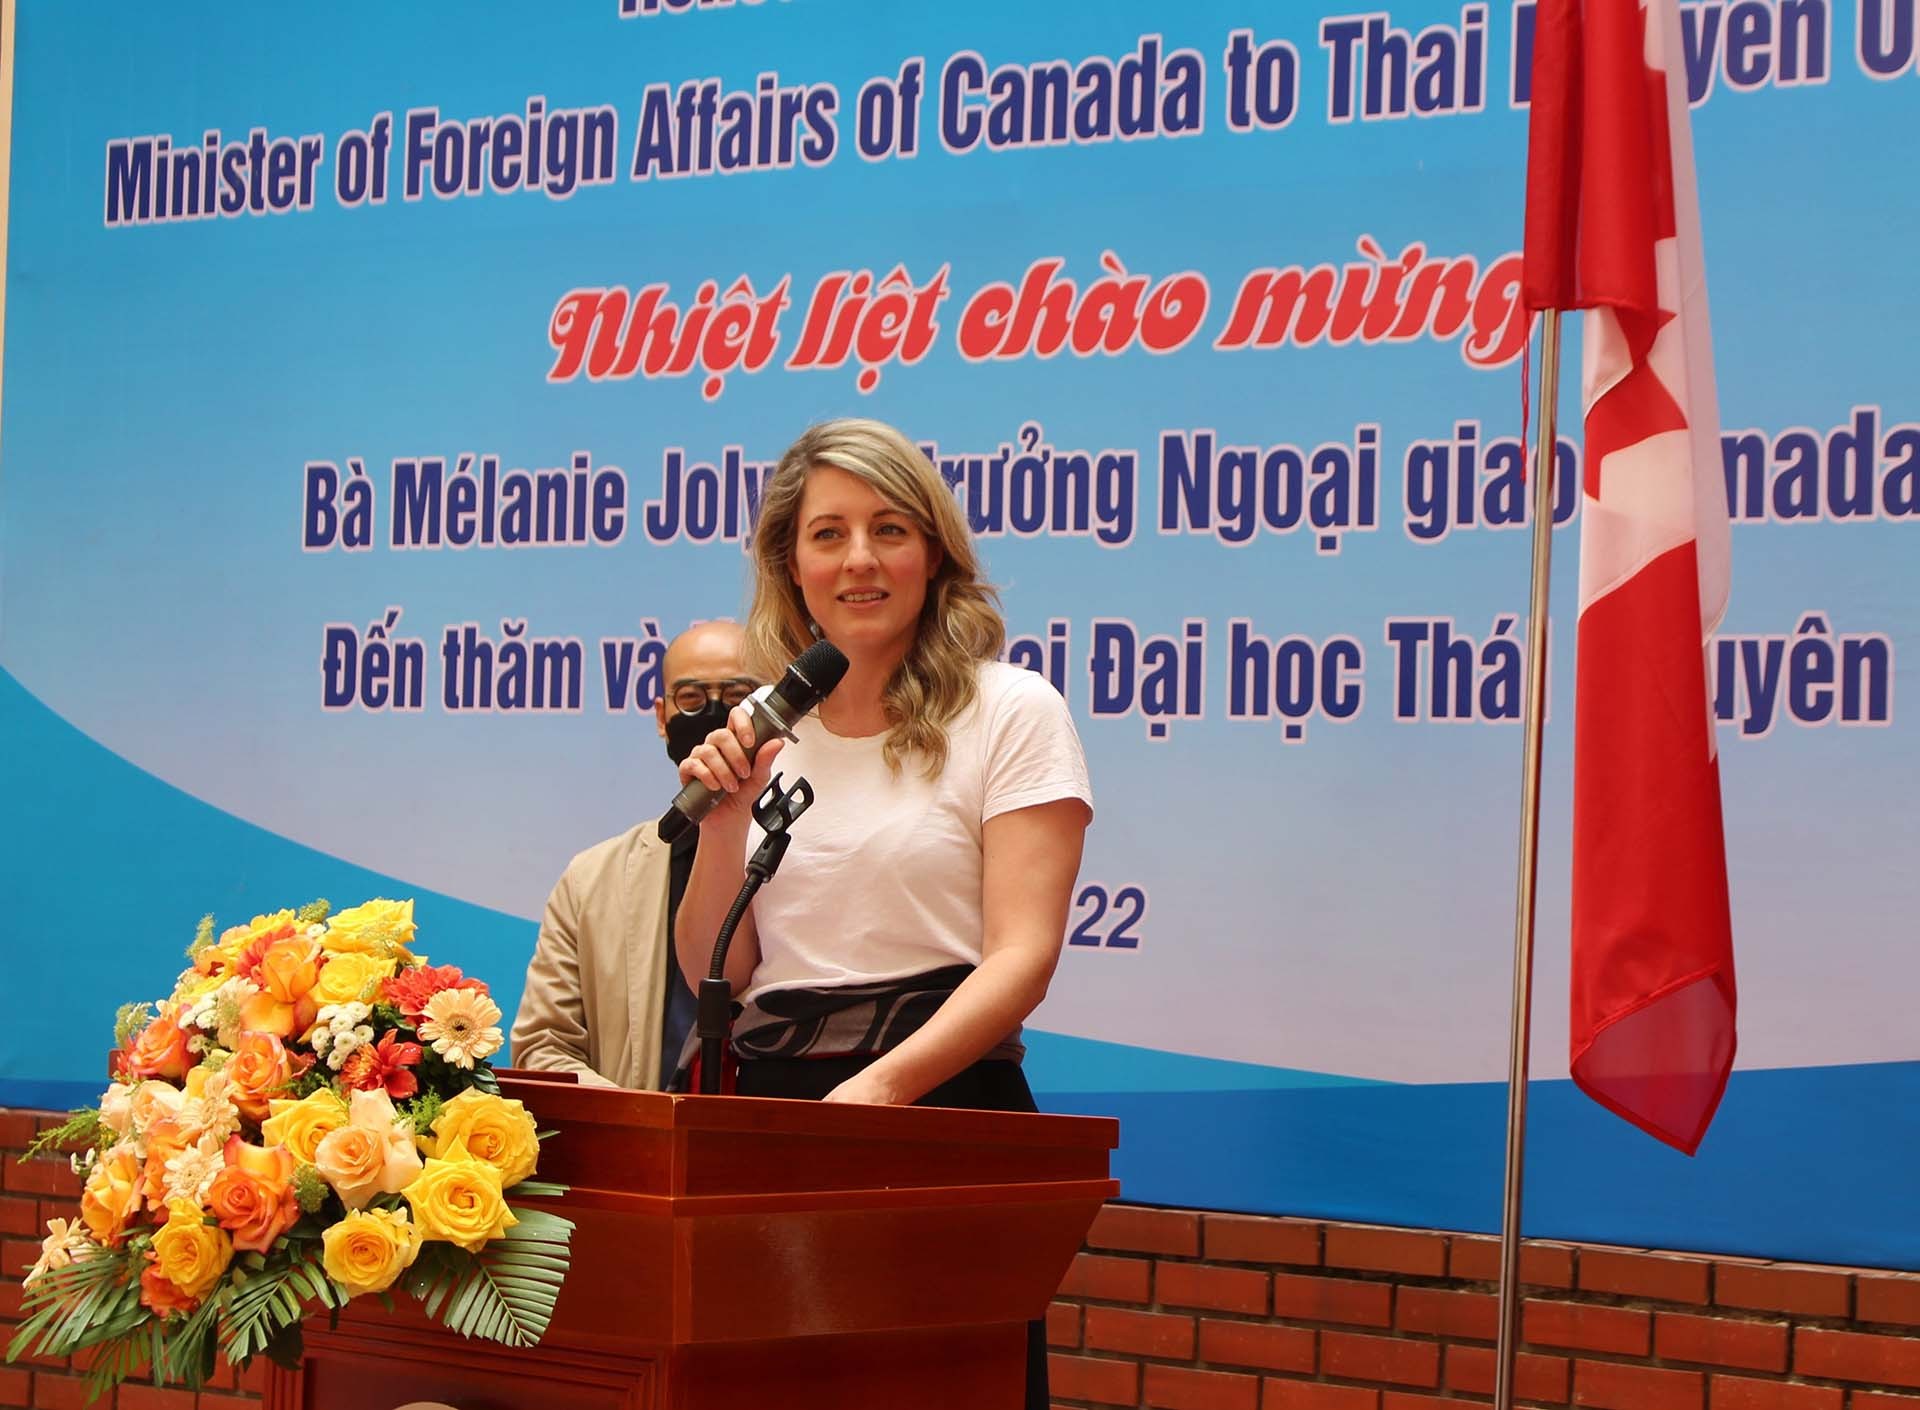 Bộ trưởng Bộ Ngoại giao Canada Mélanie Joly phát biểu tại chương trình. (Nguồn: Đại học Thái Nguyên)